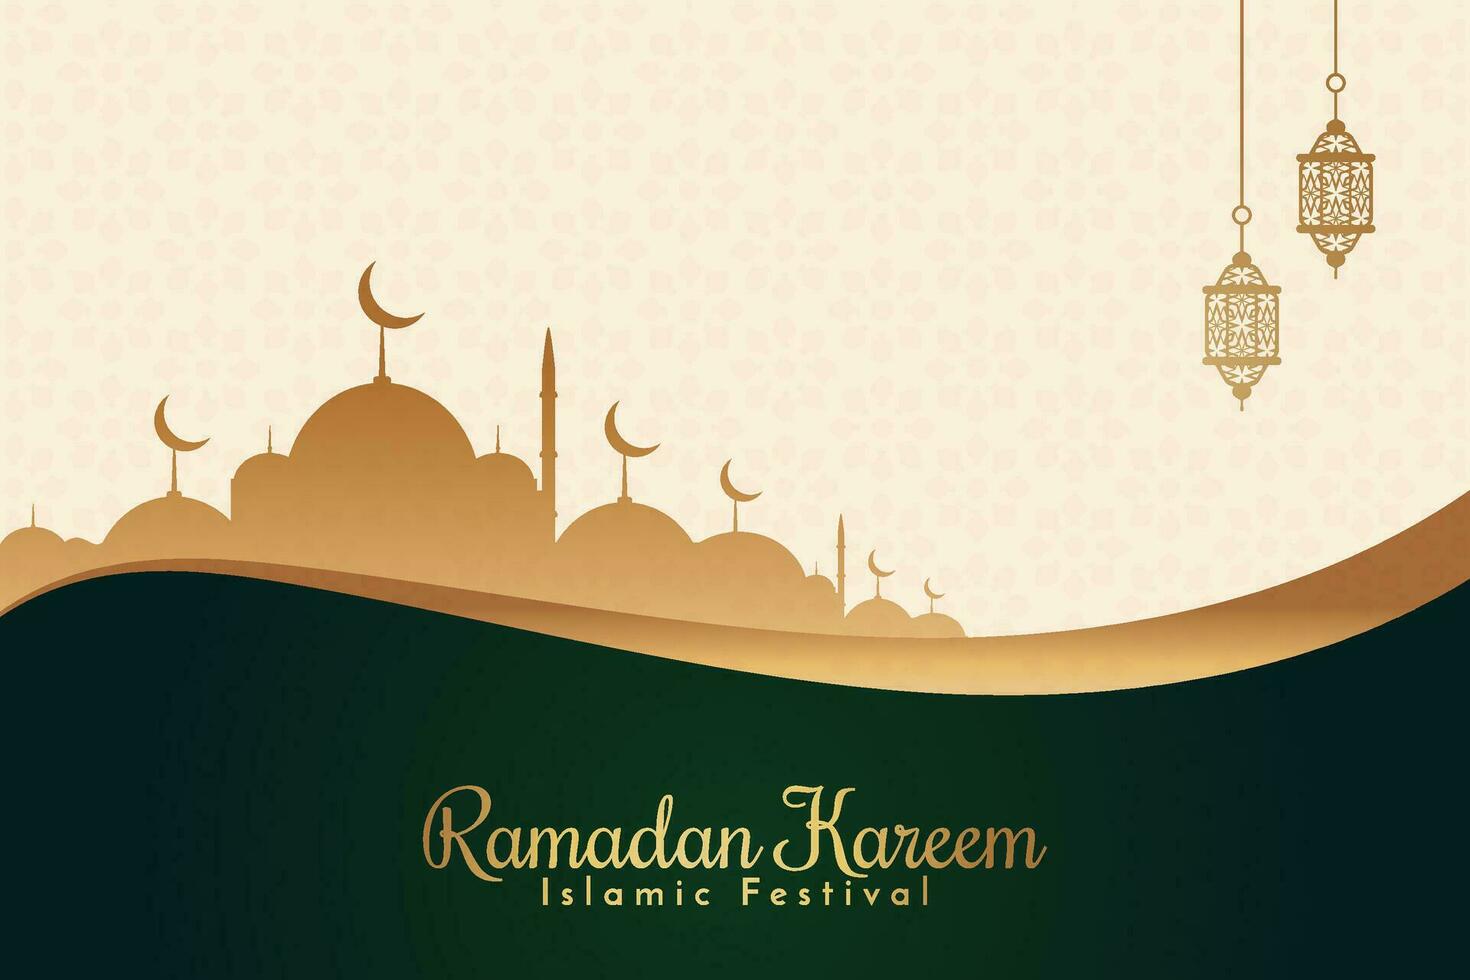 ramadan eid al-fitr mubarak hälsning kort med lyktor och arabicum ring upp vektor